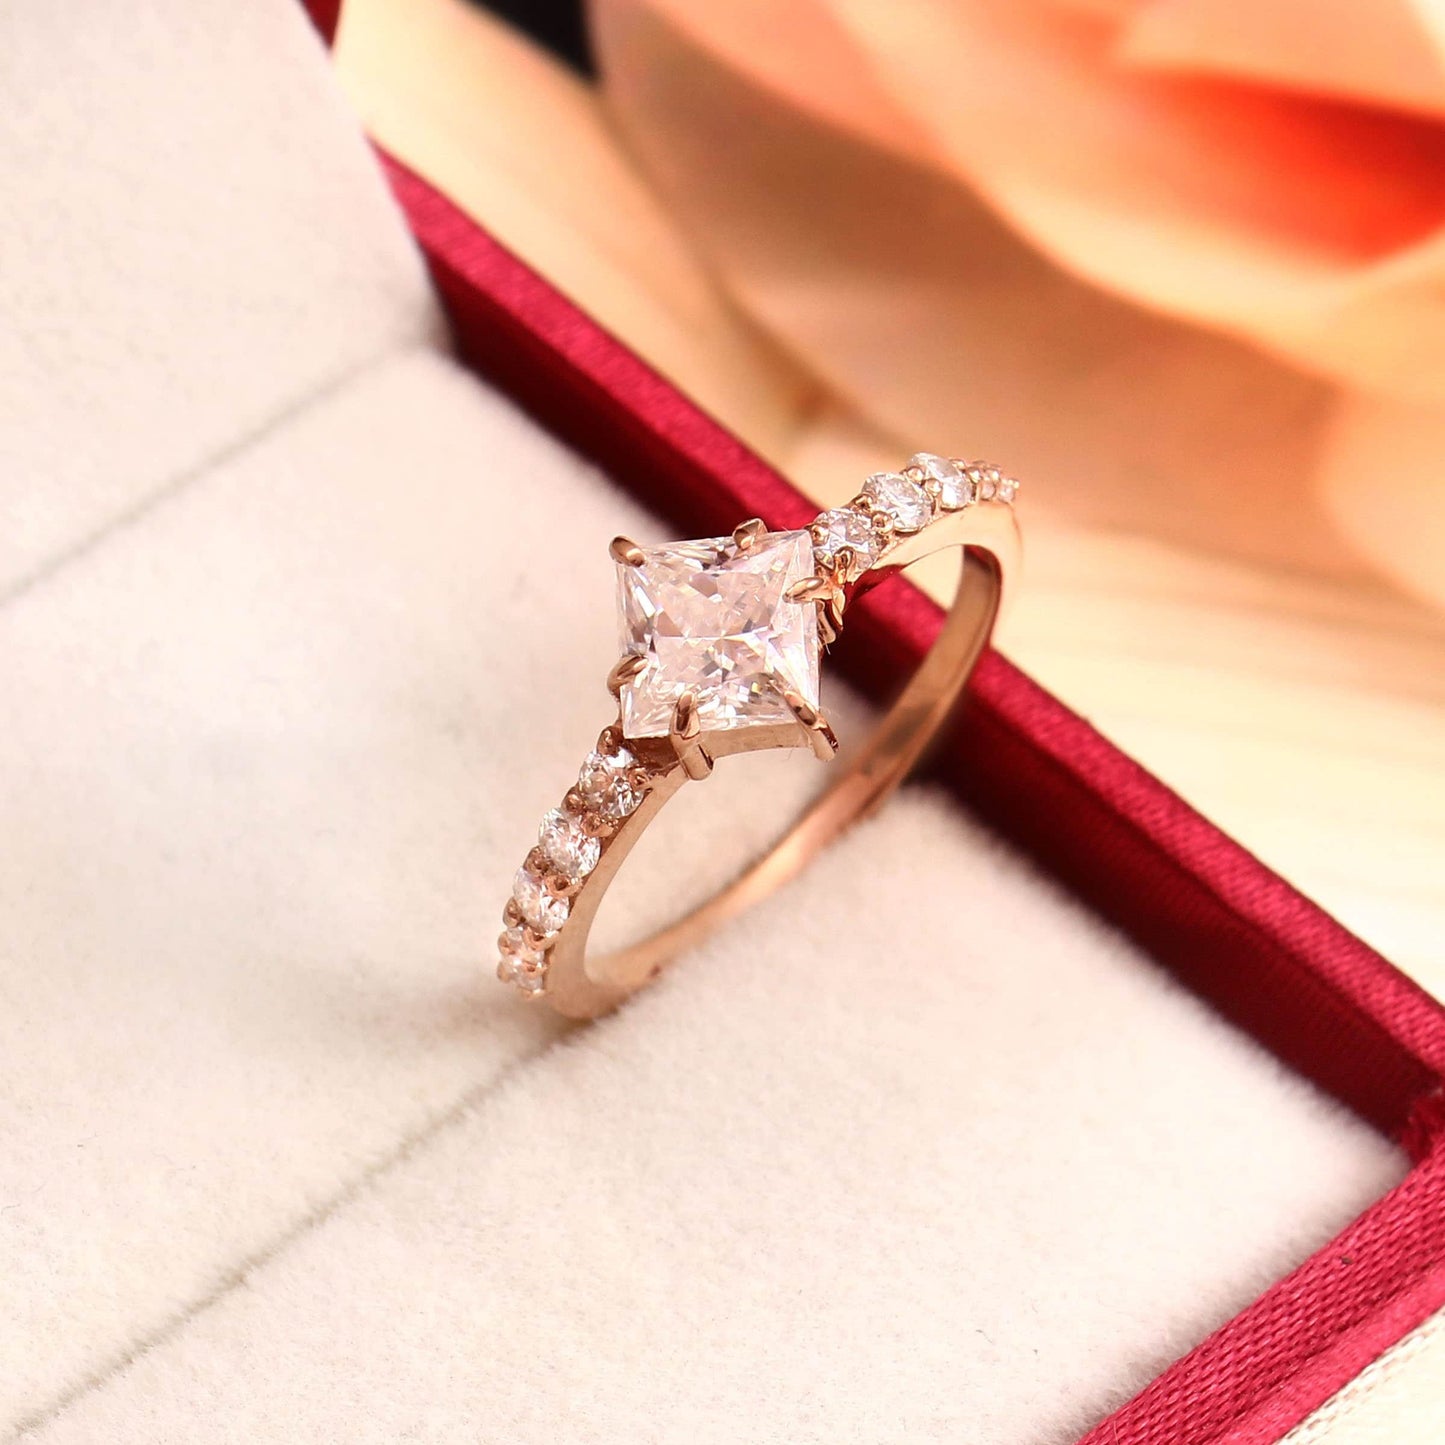 Princess diamond With Side Stones -  1 carat Lab Grown Diamond Gold Ring